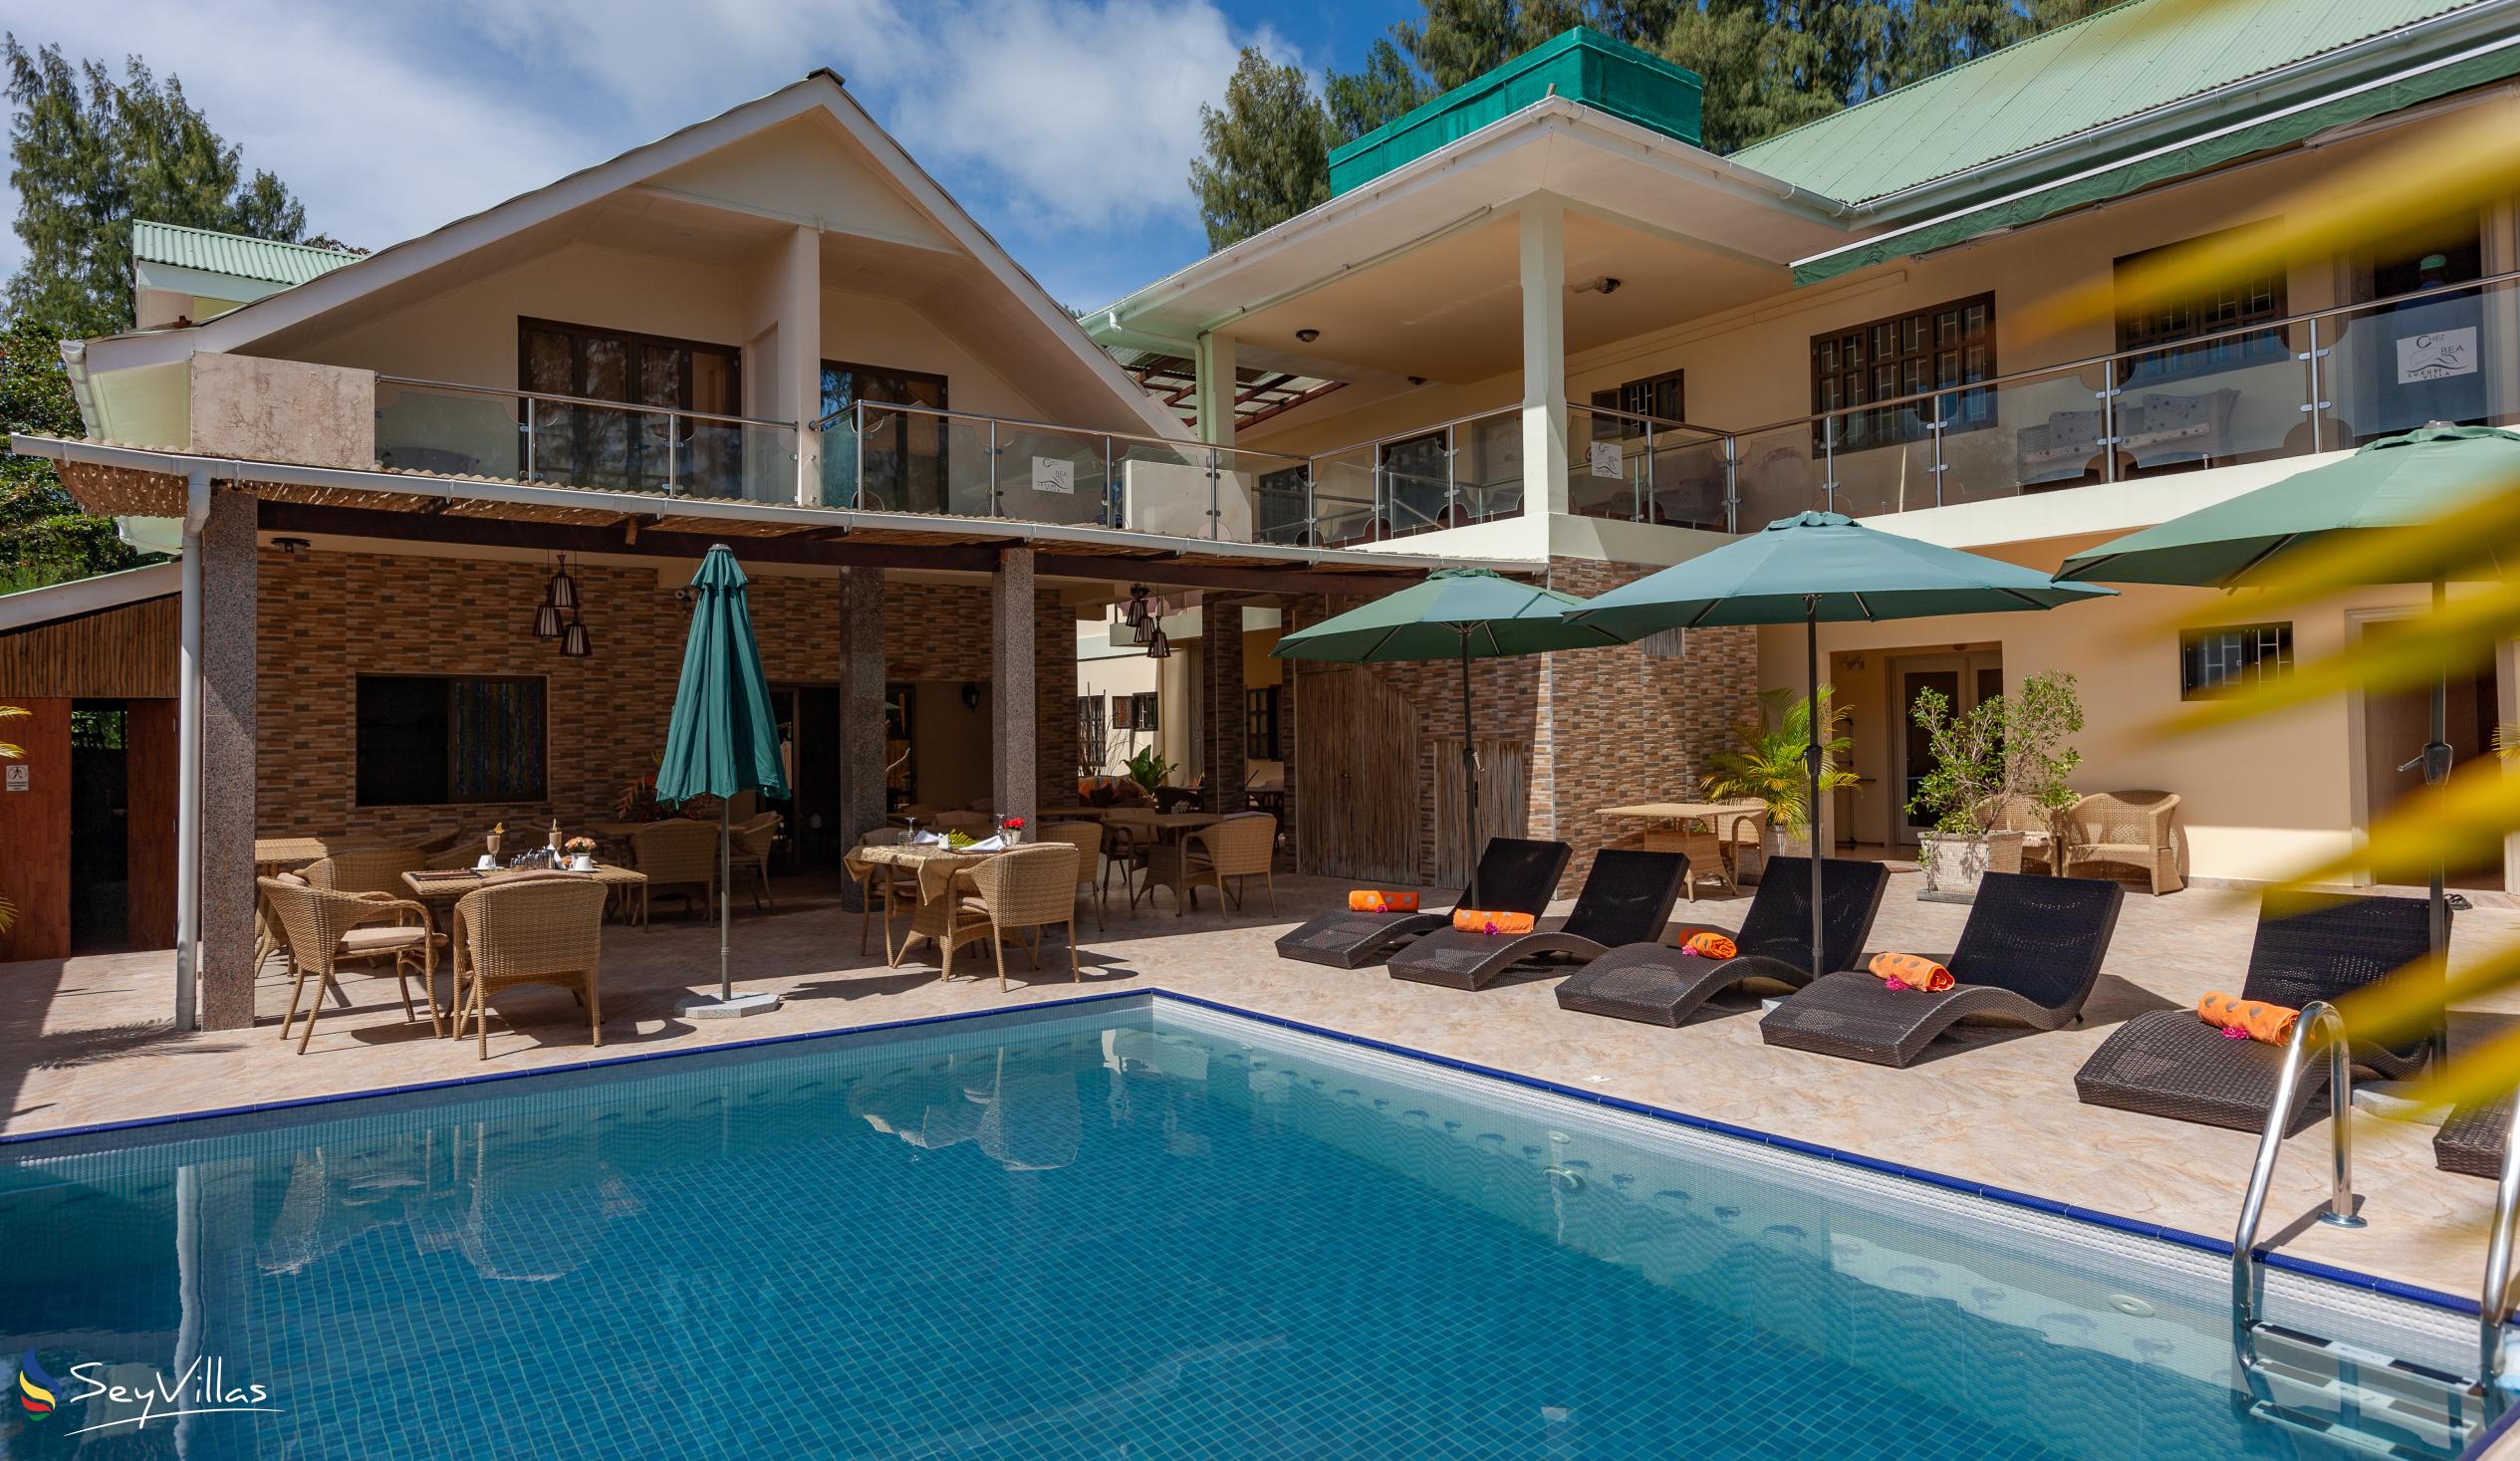 Foto 1: Chez Bea Villa - Aussenbereich - Praslin (Seychellen)